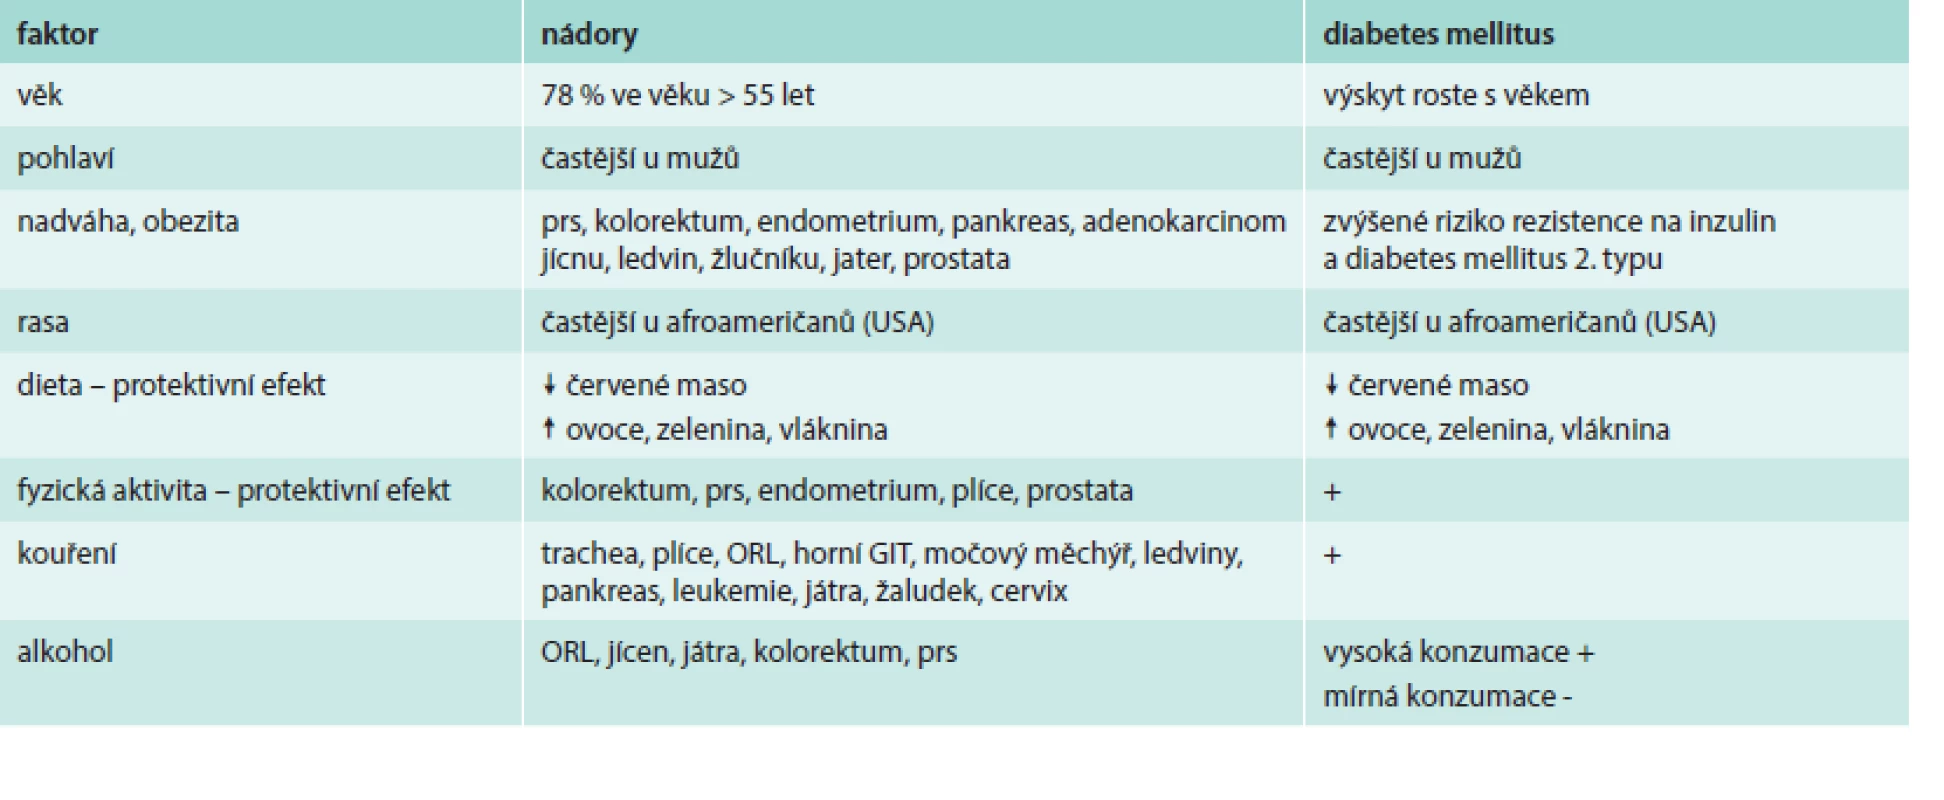 Společné rizikové faktory pro diabetes 2. typu a zhoubné nádory